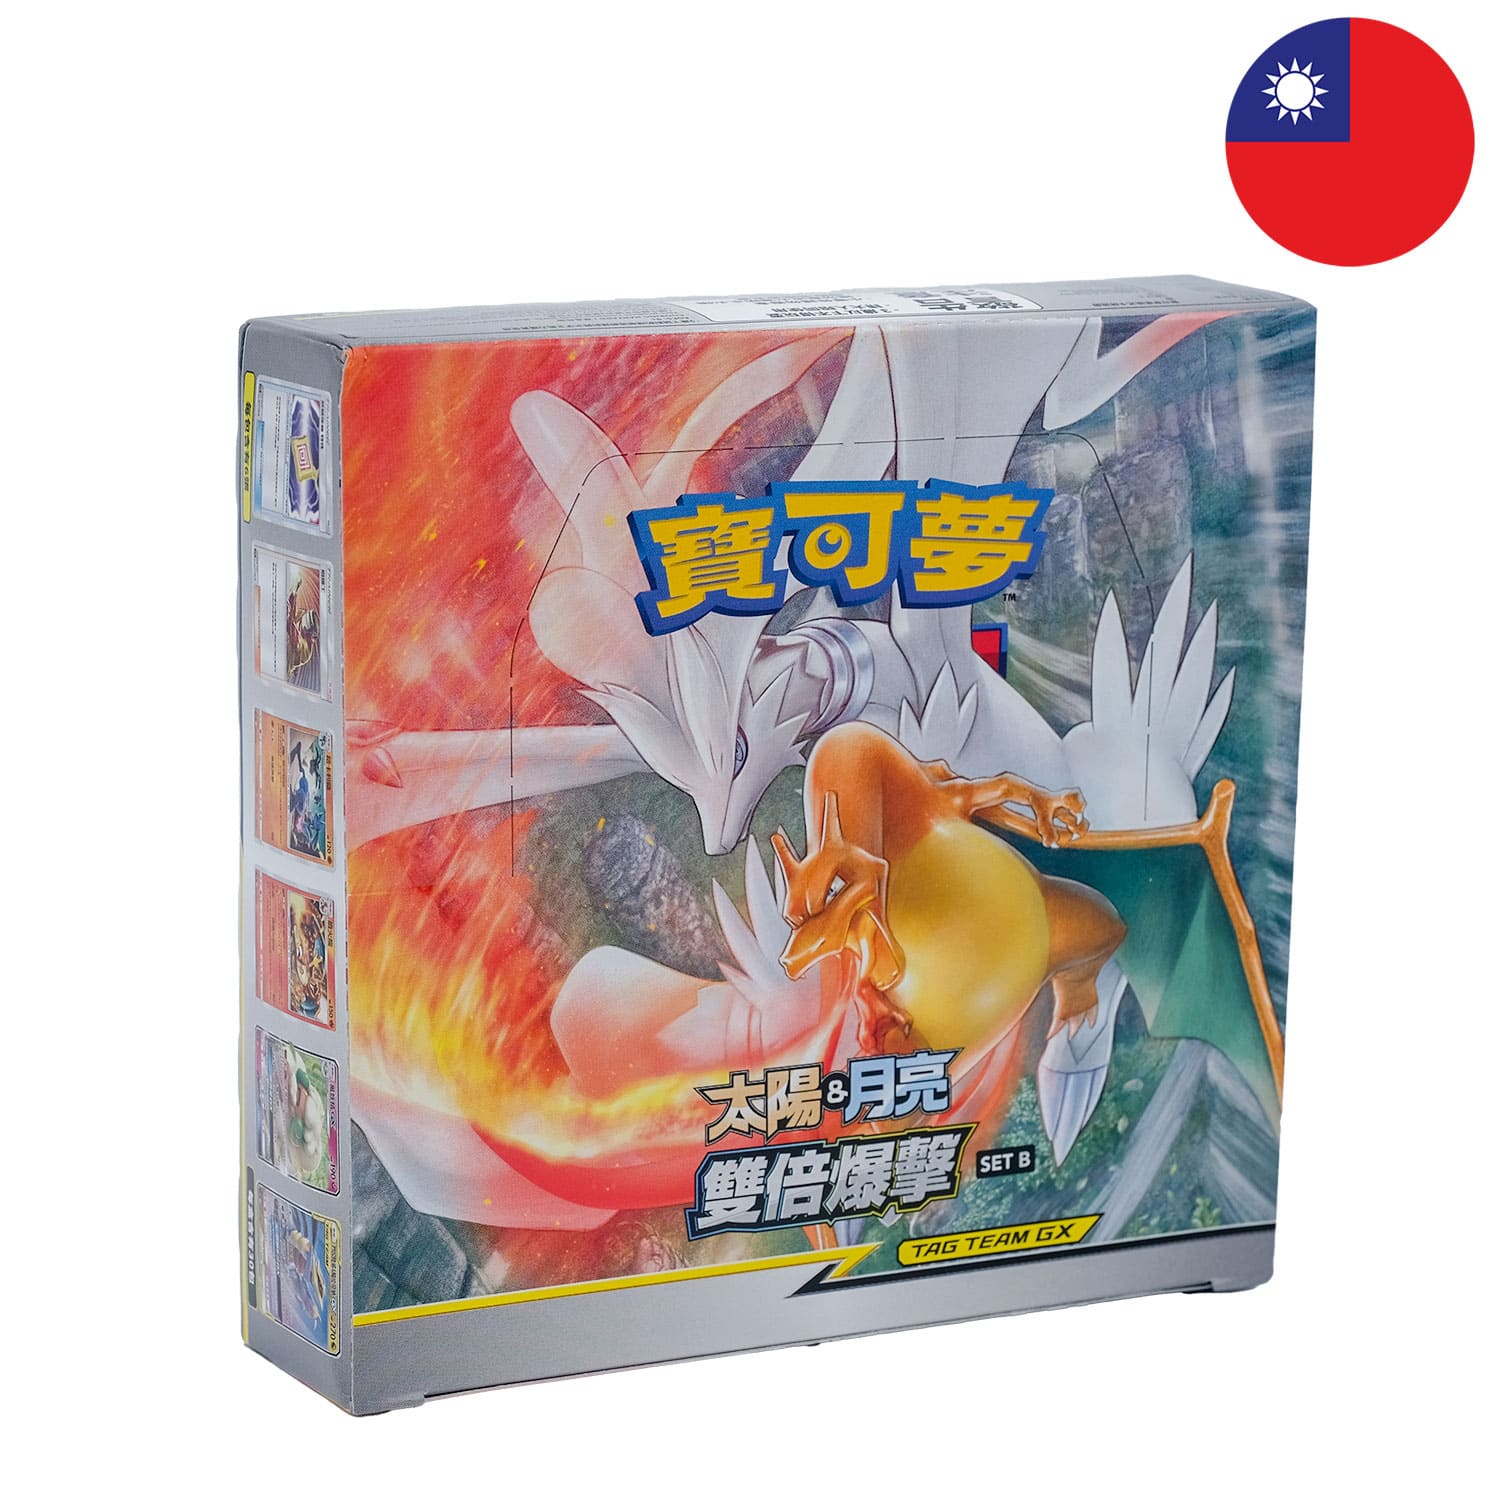 Das Tag Team GX Pokemon Display Double Burst: Double Blaze, frontal&schräg als Hauptbild, mit der Flagge Chinas in der Ecke.